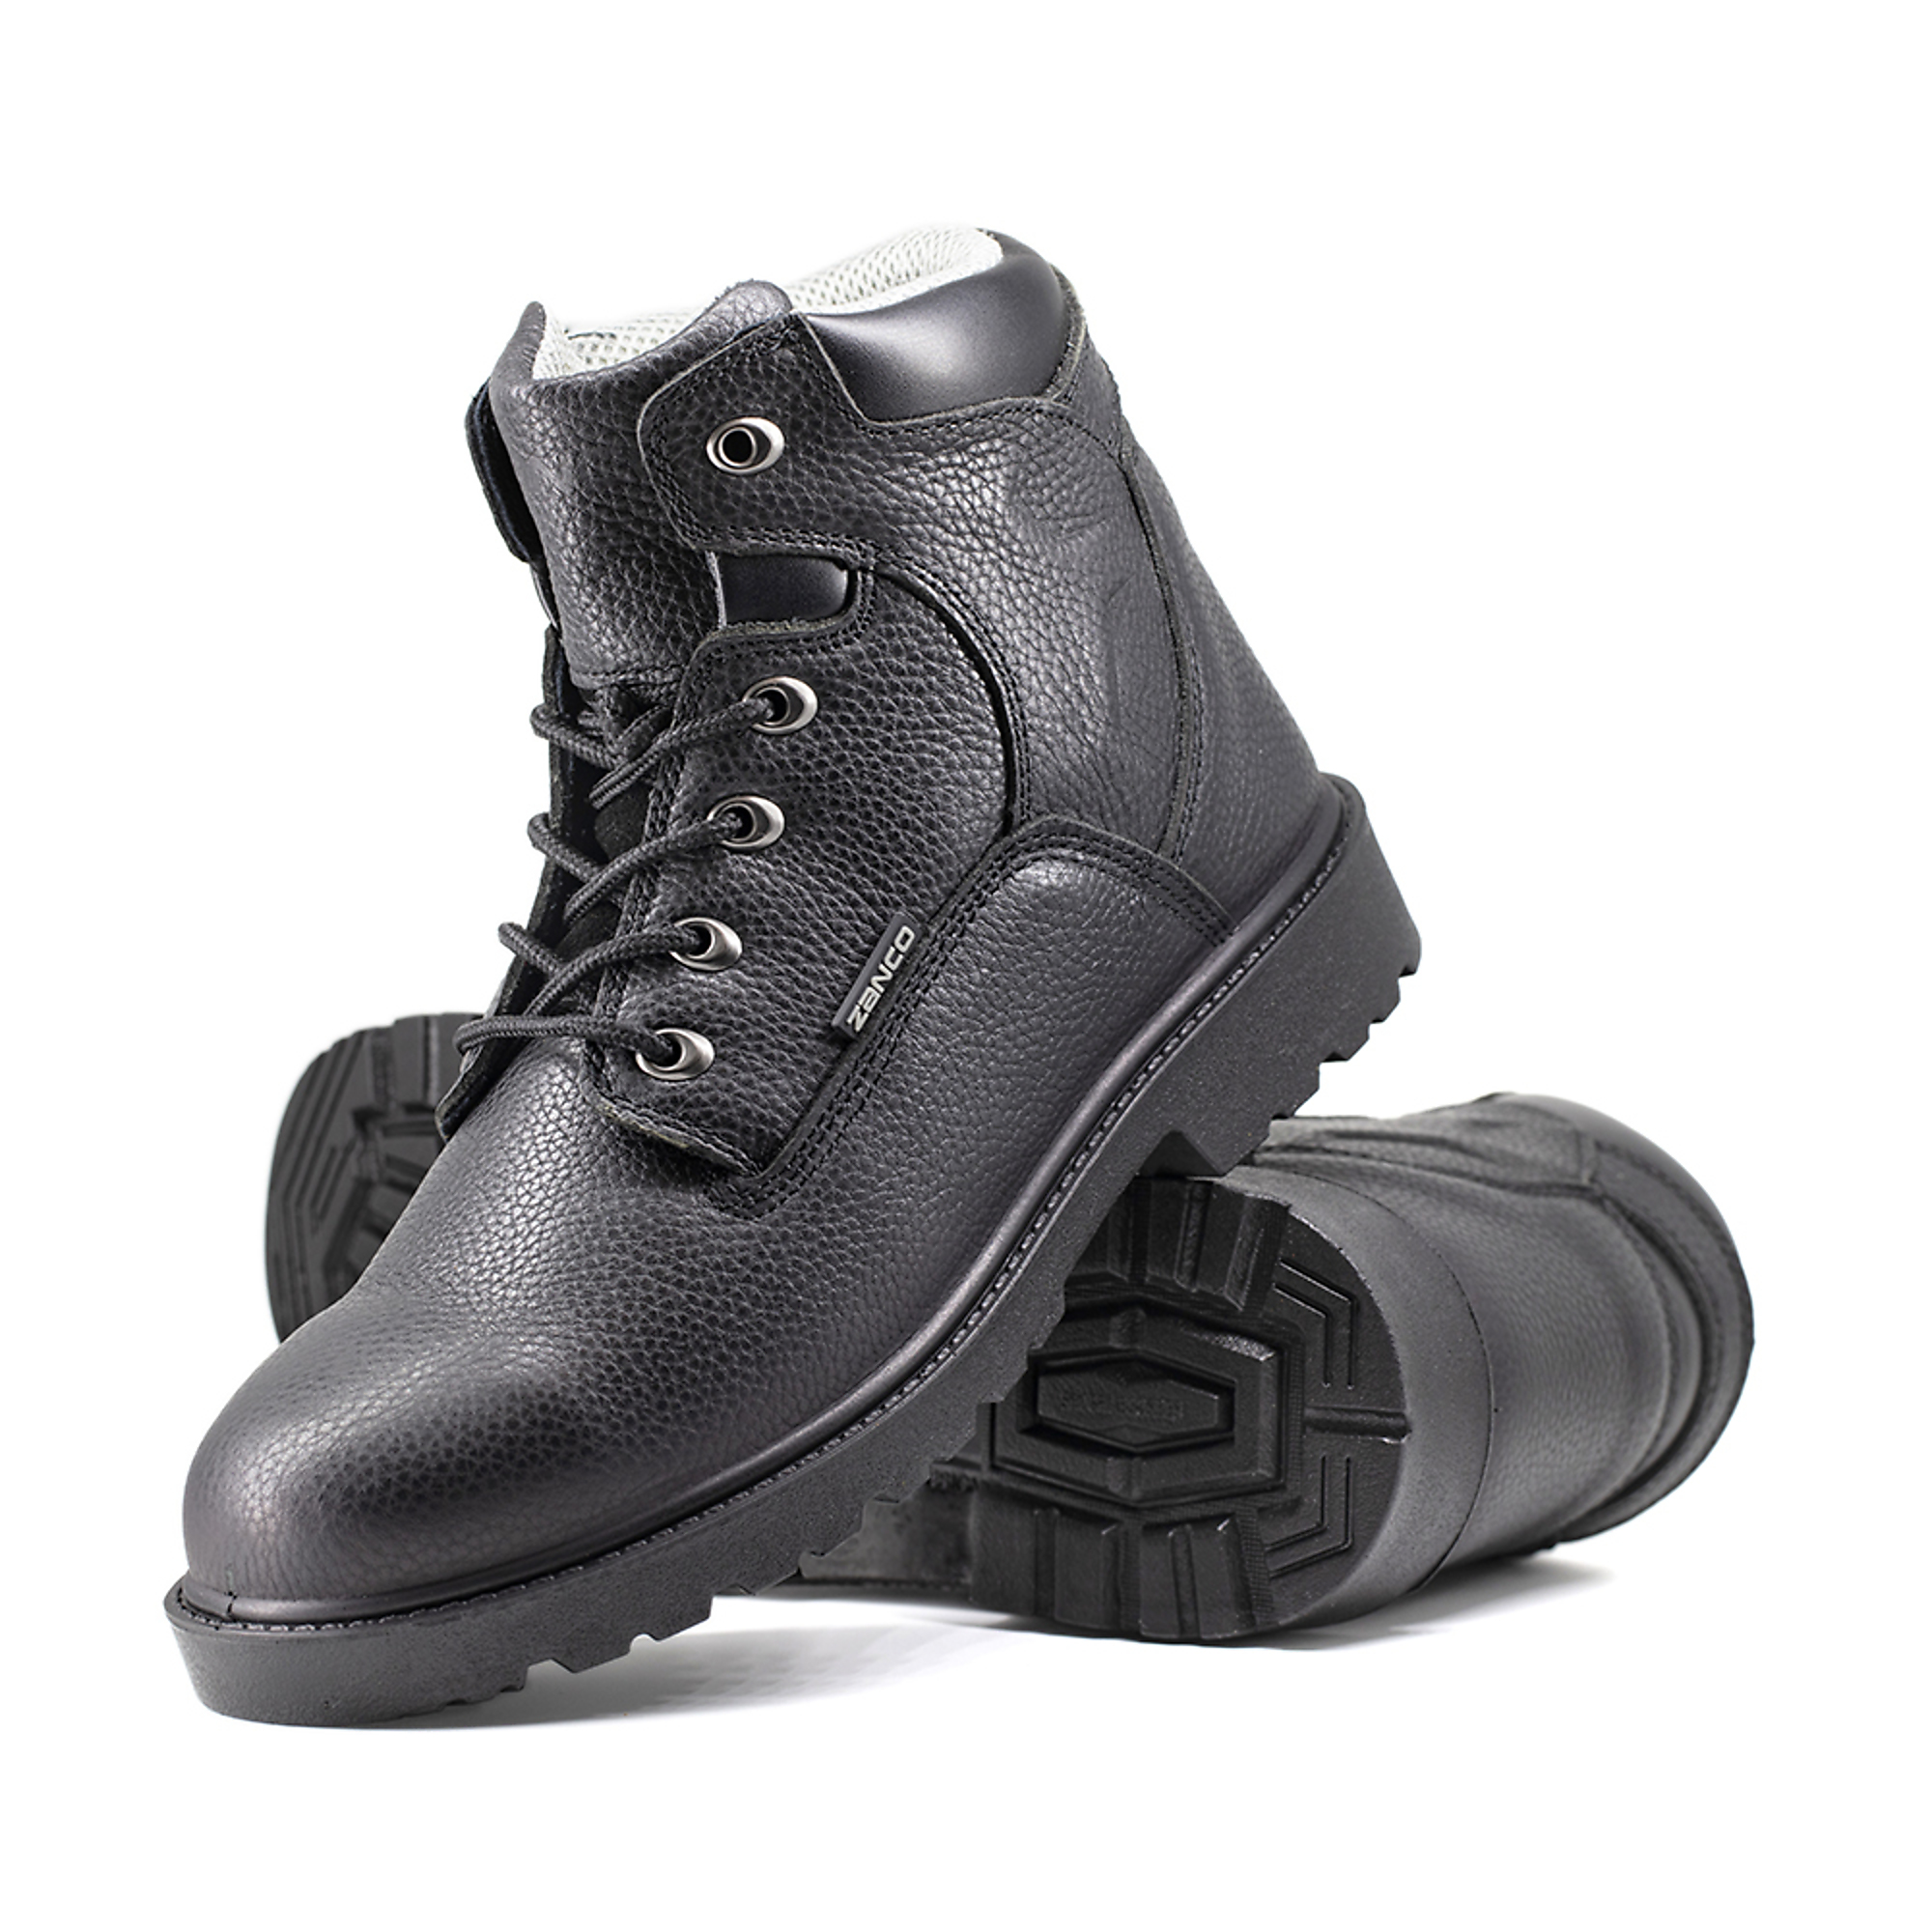 Zanco, Men's Waterproof,Steel toe,EH,Safety boots, Size 8, Width Medium, Color BLACK, Model 7682-SE-8